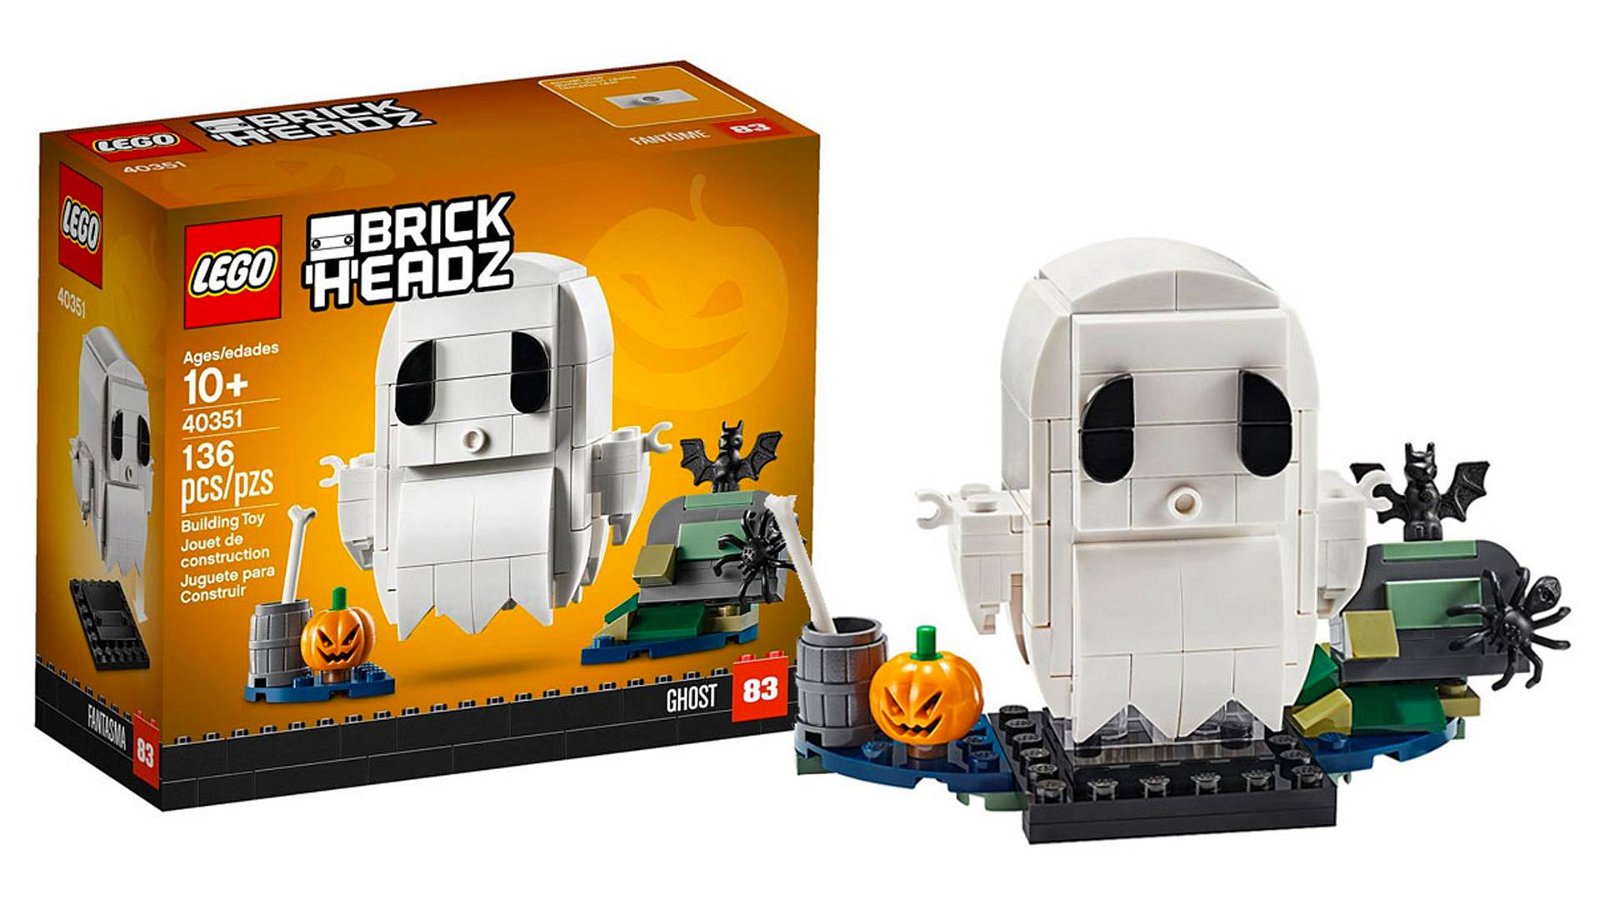 Immagine di In Arrivo un nuovo set BrickHeadz Lego dedicato ad Halloween